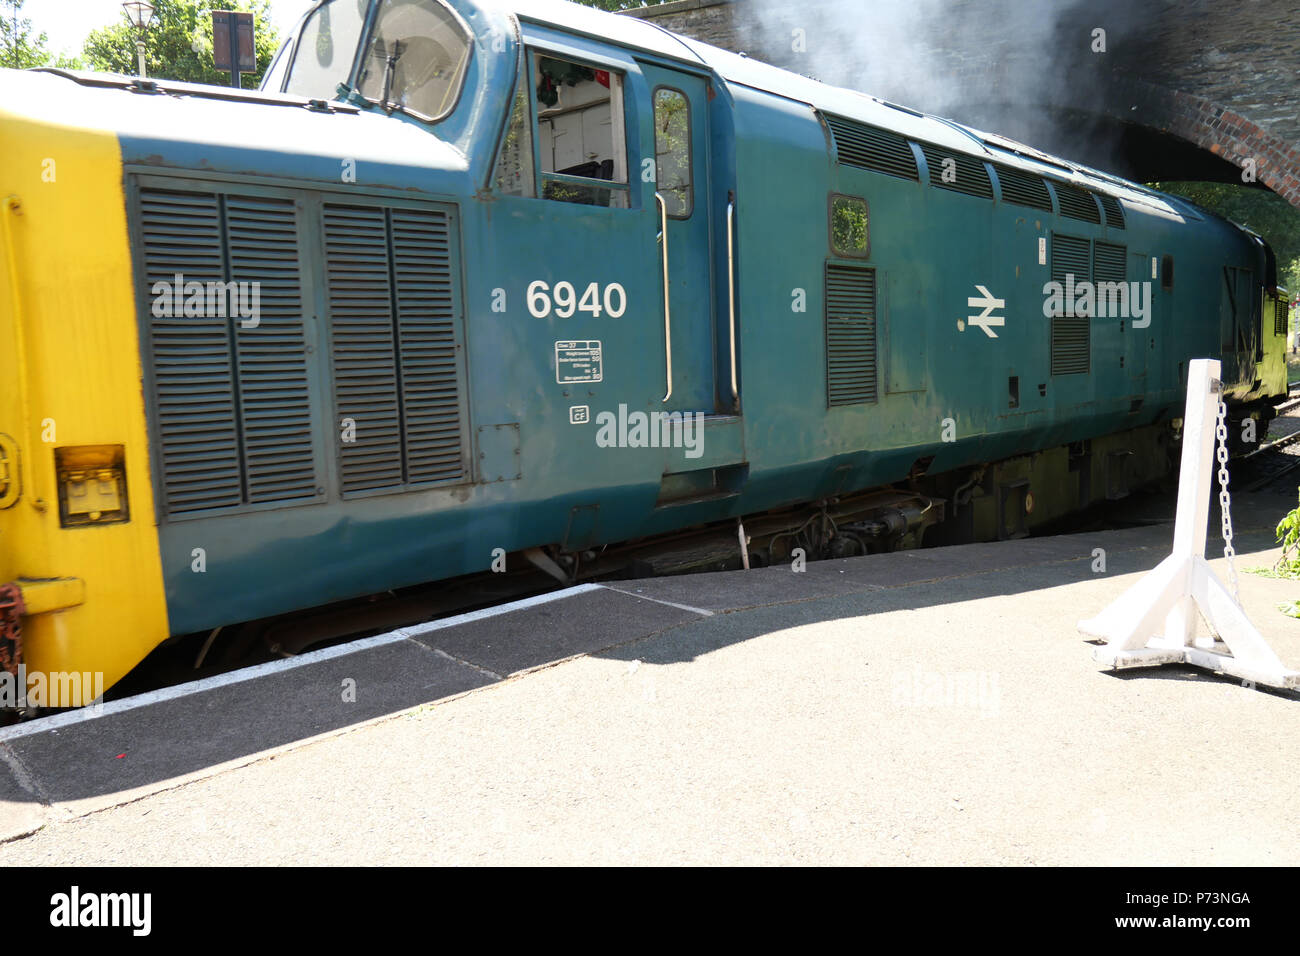 03 Julio 2018 - Estación ferroviaria Carrog, Gales, Reino Unido. con una clase de 37 locomotoras (grupo C37LG) Inglés Tipo eléctrico 3. El motor V12 de 1700 CV. Foto de stock